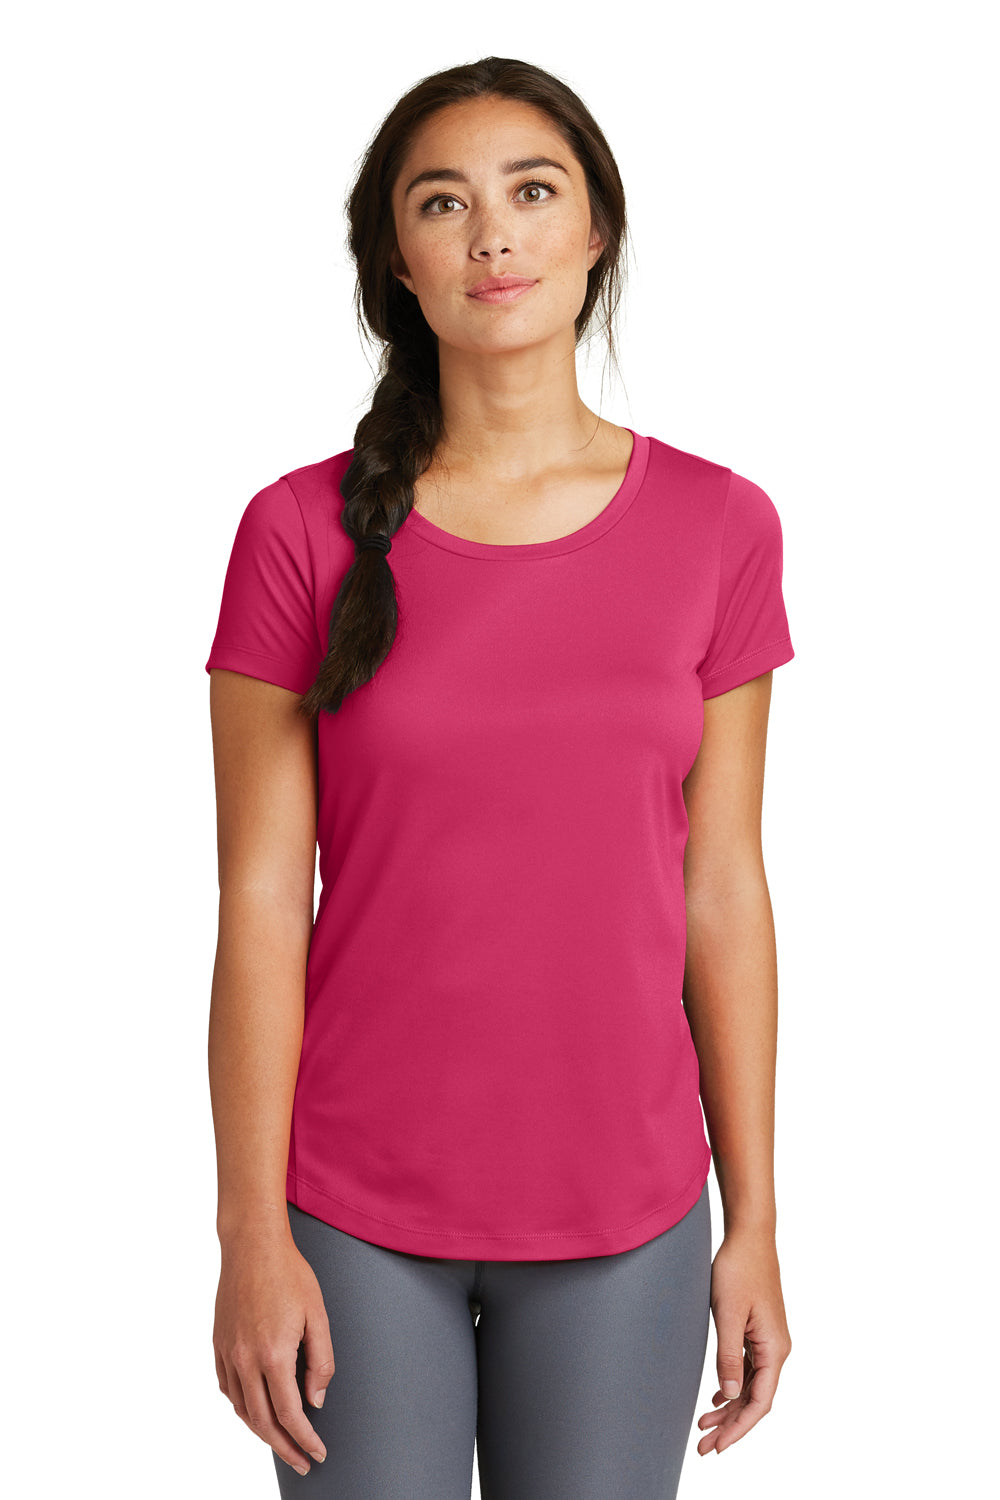 New Era LNEA200 Womens Series Performance Jersey Moisture Wicking Short Sleeve Crewneck T-Shirt Deep Pink Front